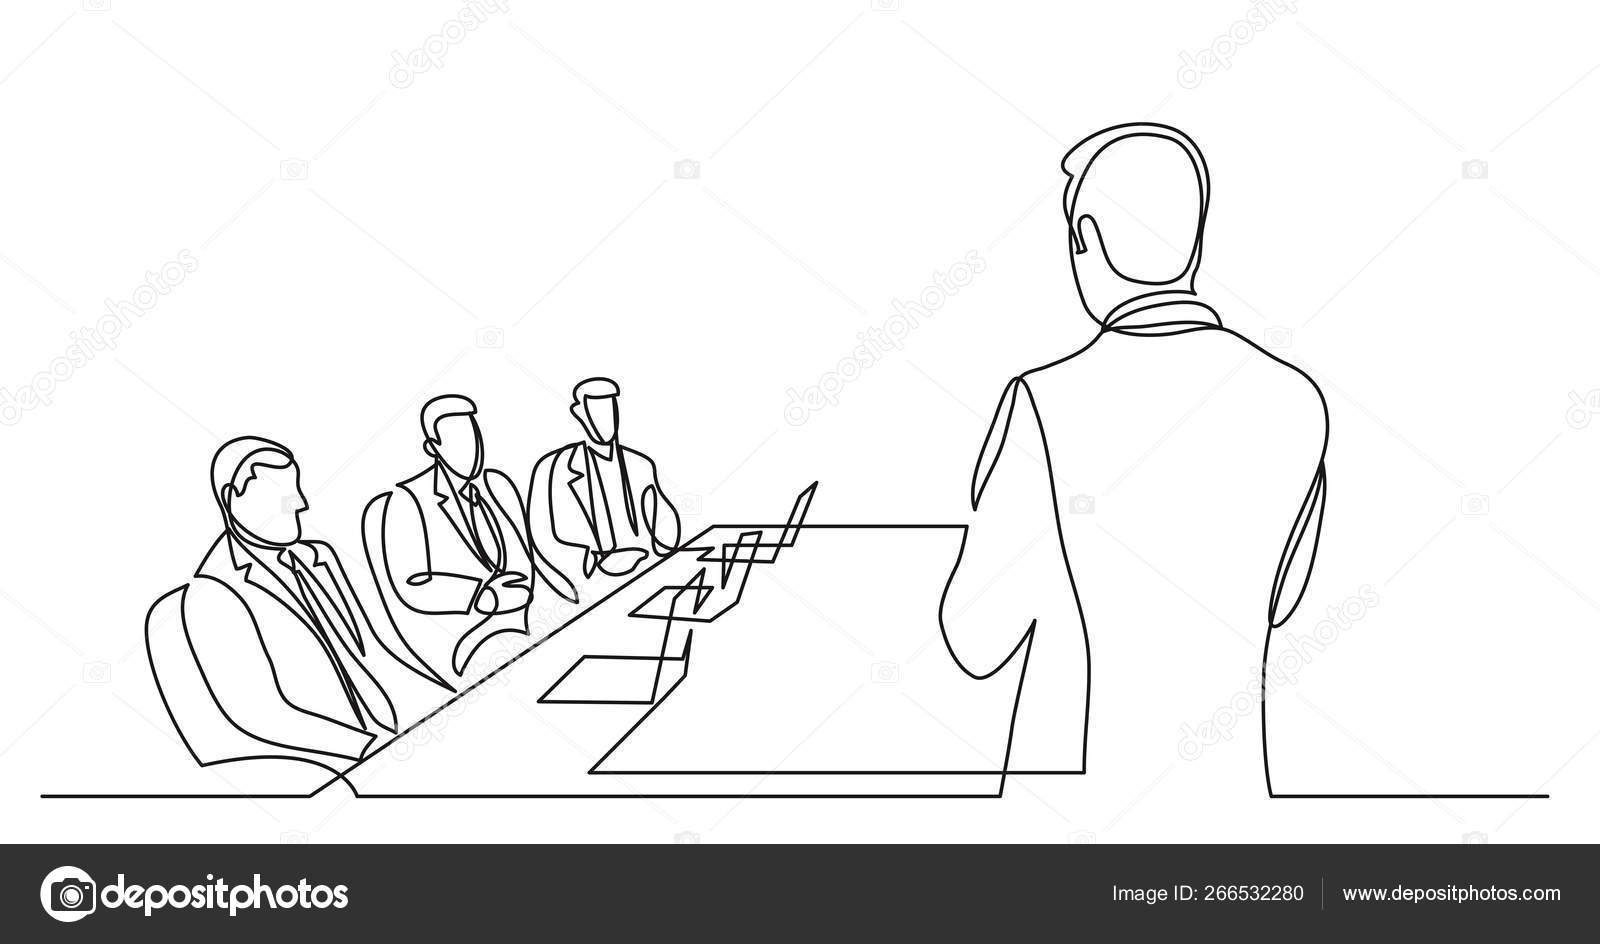 Team leader talking before board members - single line drawing